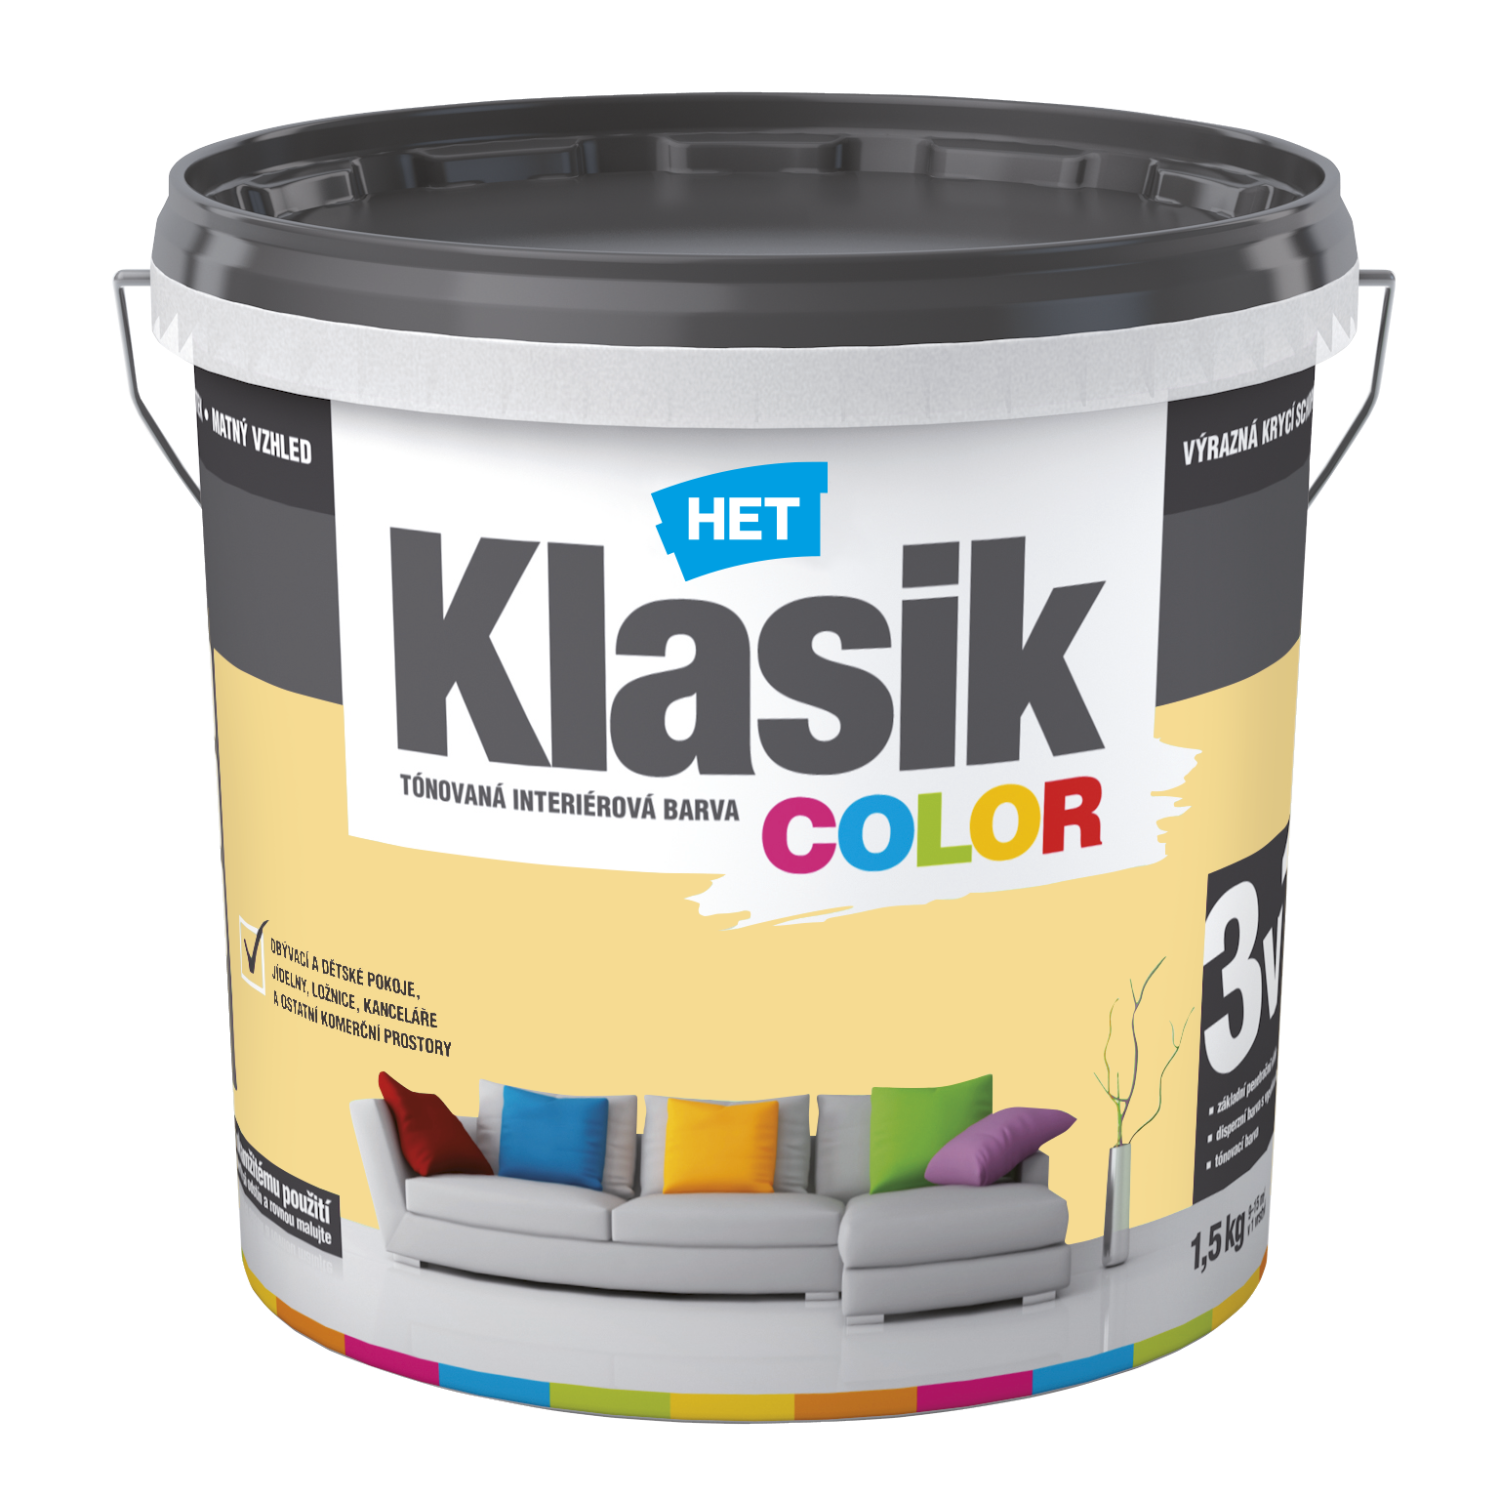 HET Klasik COLOR tónovaná interiérová akrylátová disperzná oteruvzdorná farba 1,5 kg, KC0628 - žltý púpavový